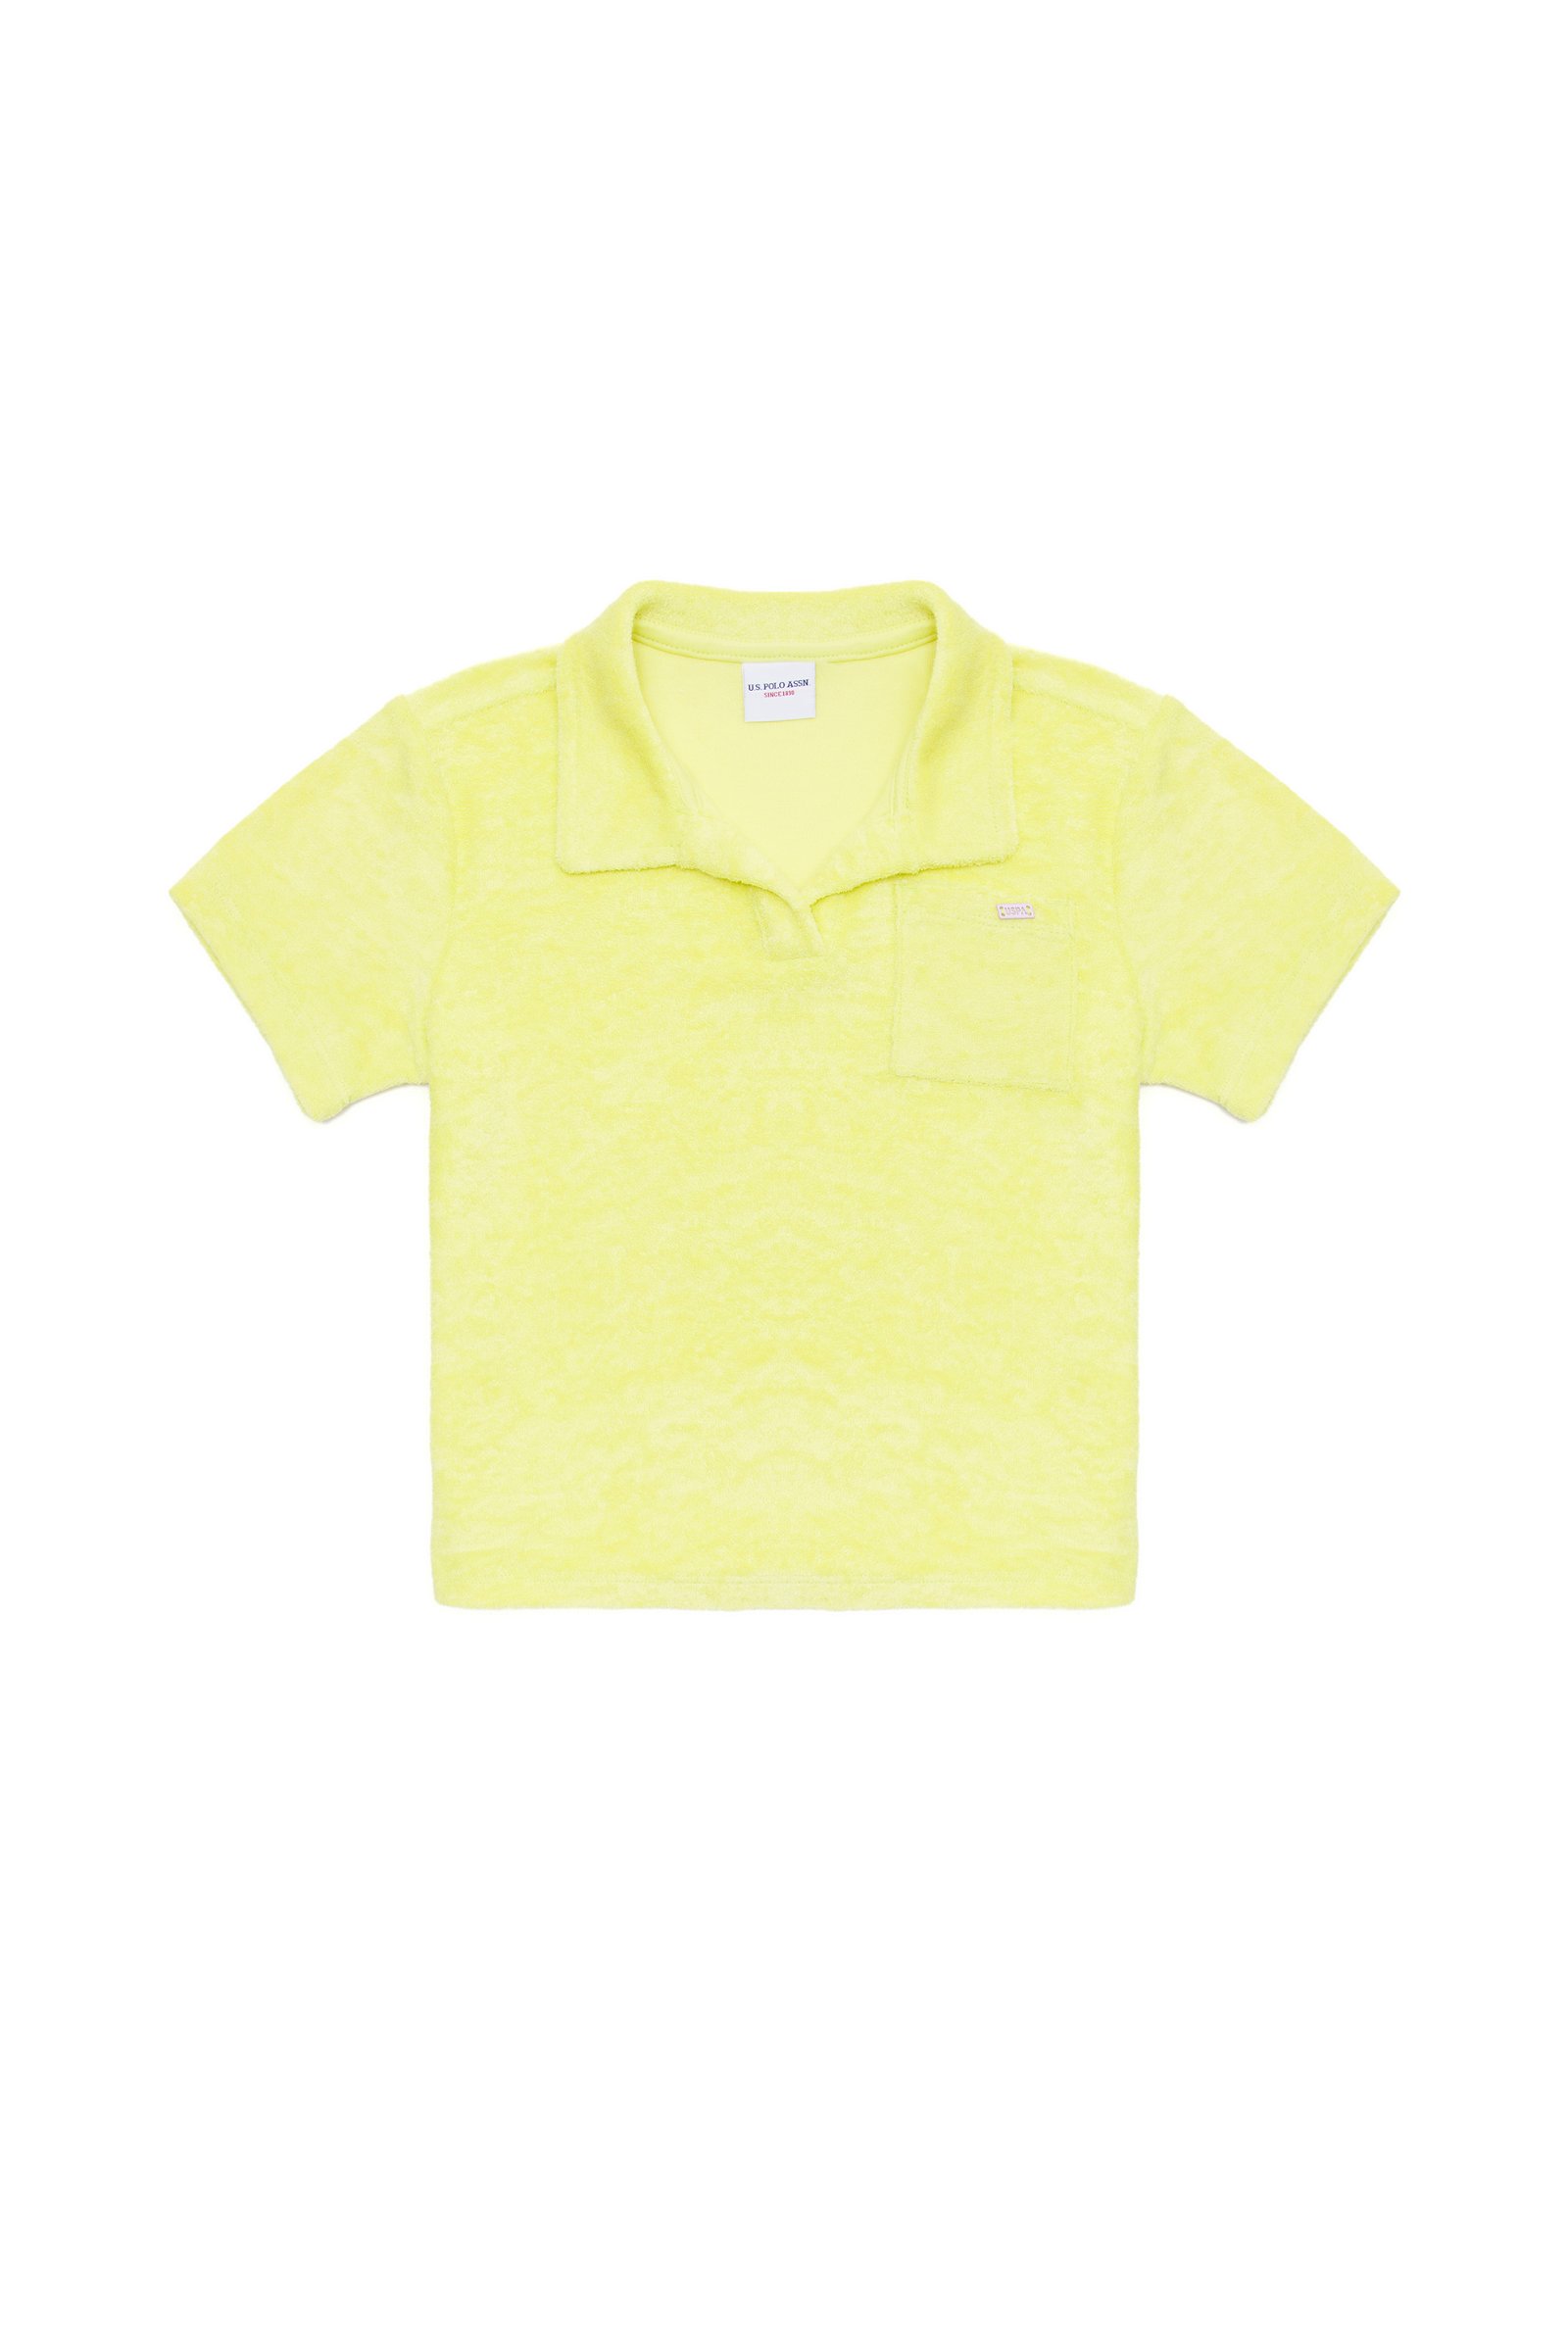 تی شرت یقه پولو لیمویی  Crop Top آستین کوتاه دخترانه یو اس پولو | US POLO ASSN